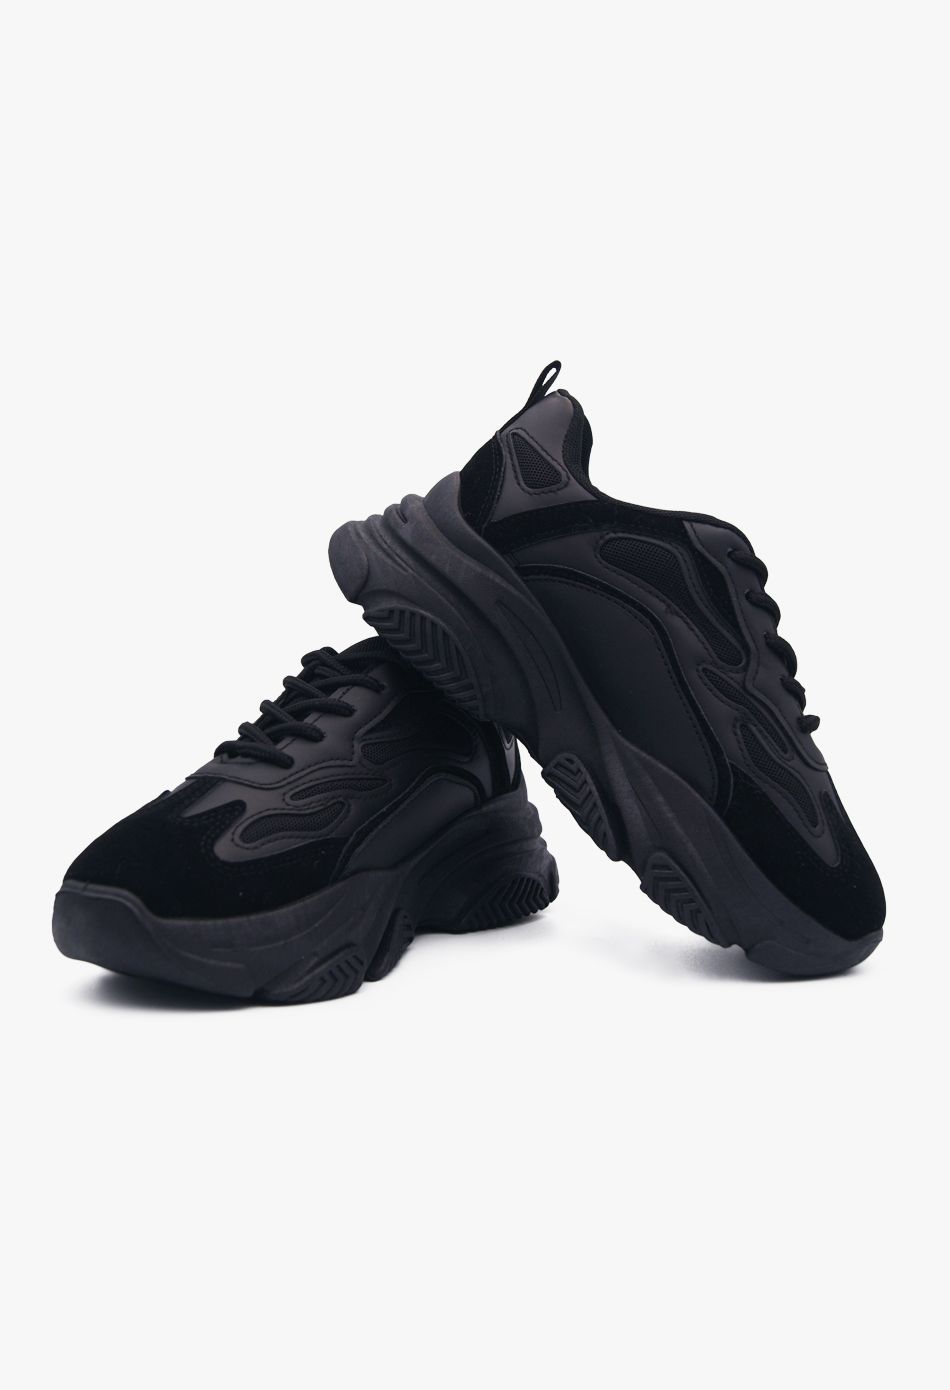 Γυναικεία Ultra Sole Chunky Sneakers Μαύρο / LY556-black Γυναικεία Αθλητικά και Sneakers joya.gr